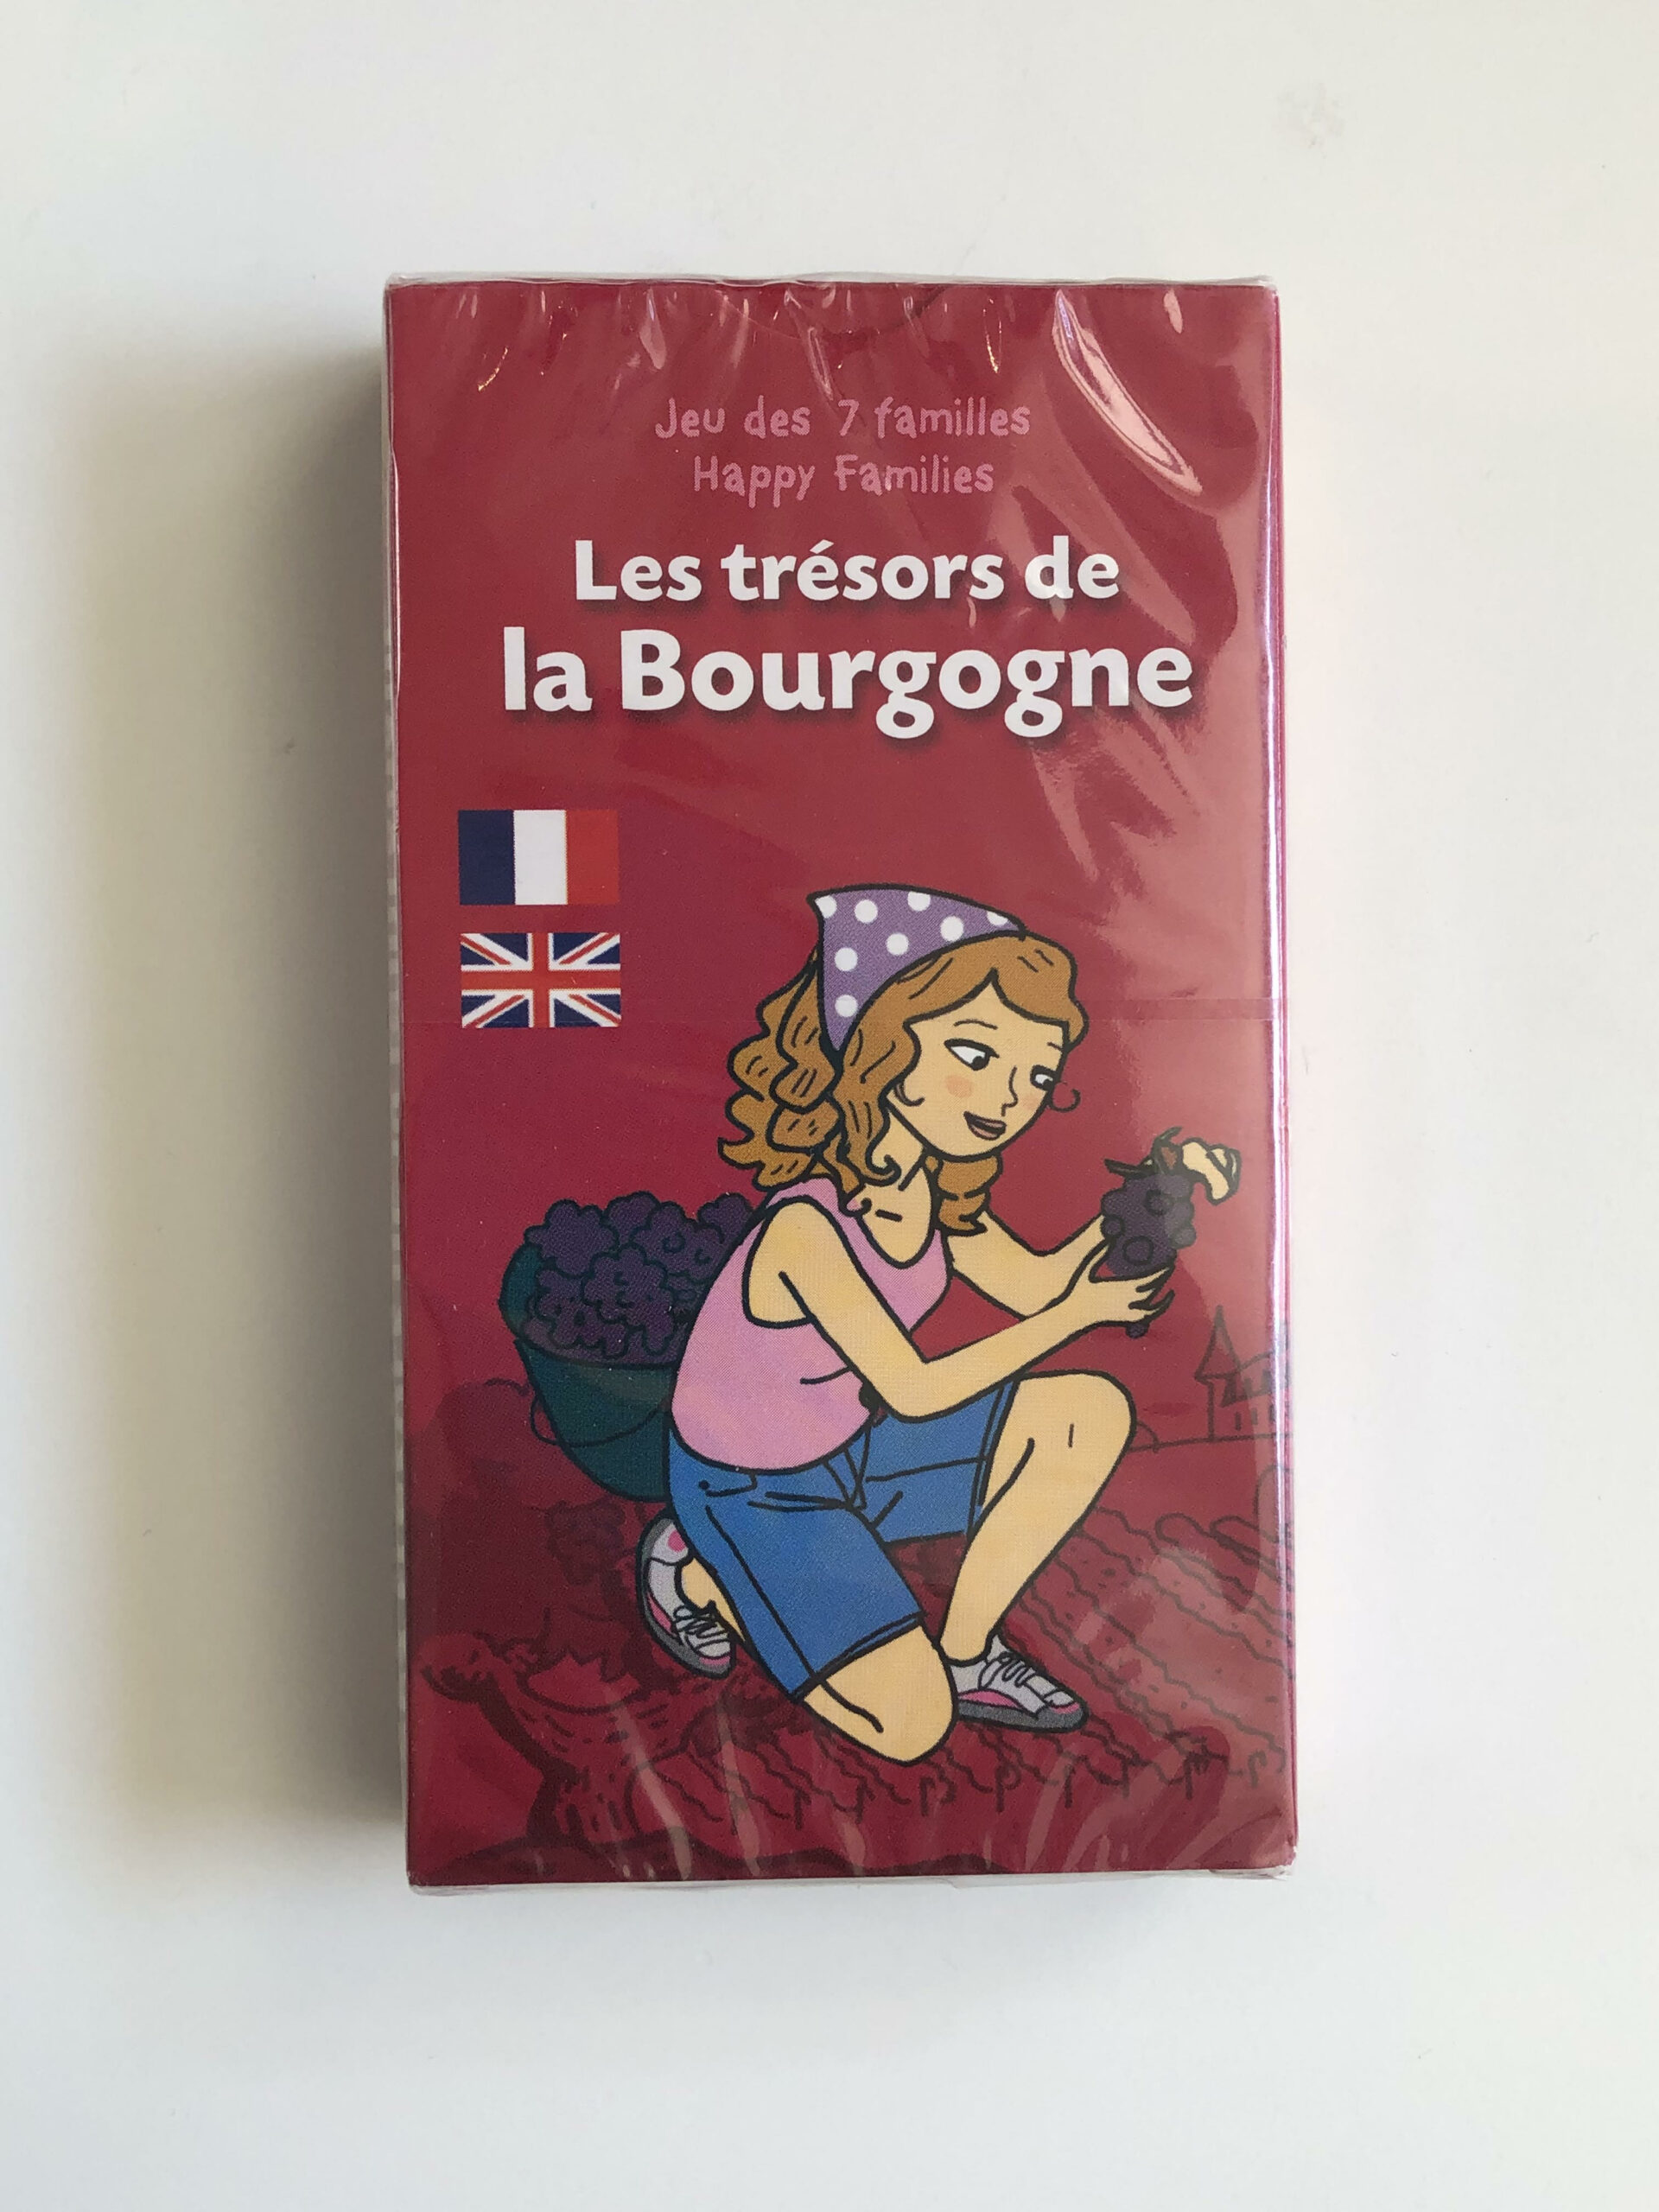 Jeu de carte de 7 familles “Les trésors de la Bourgogne”